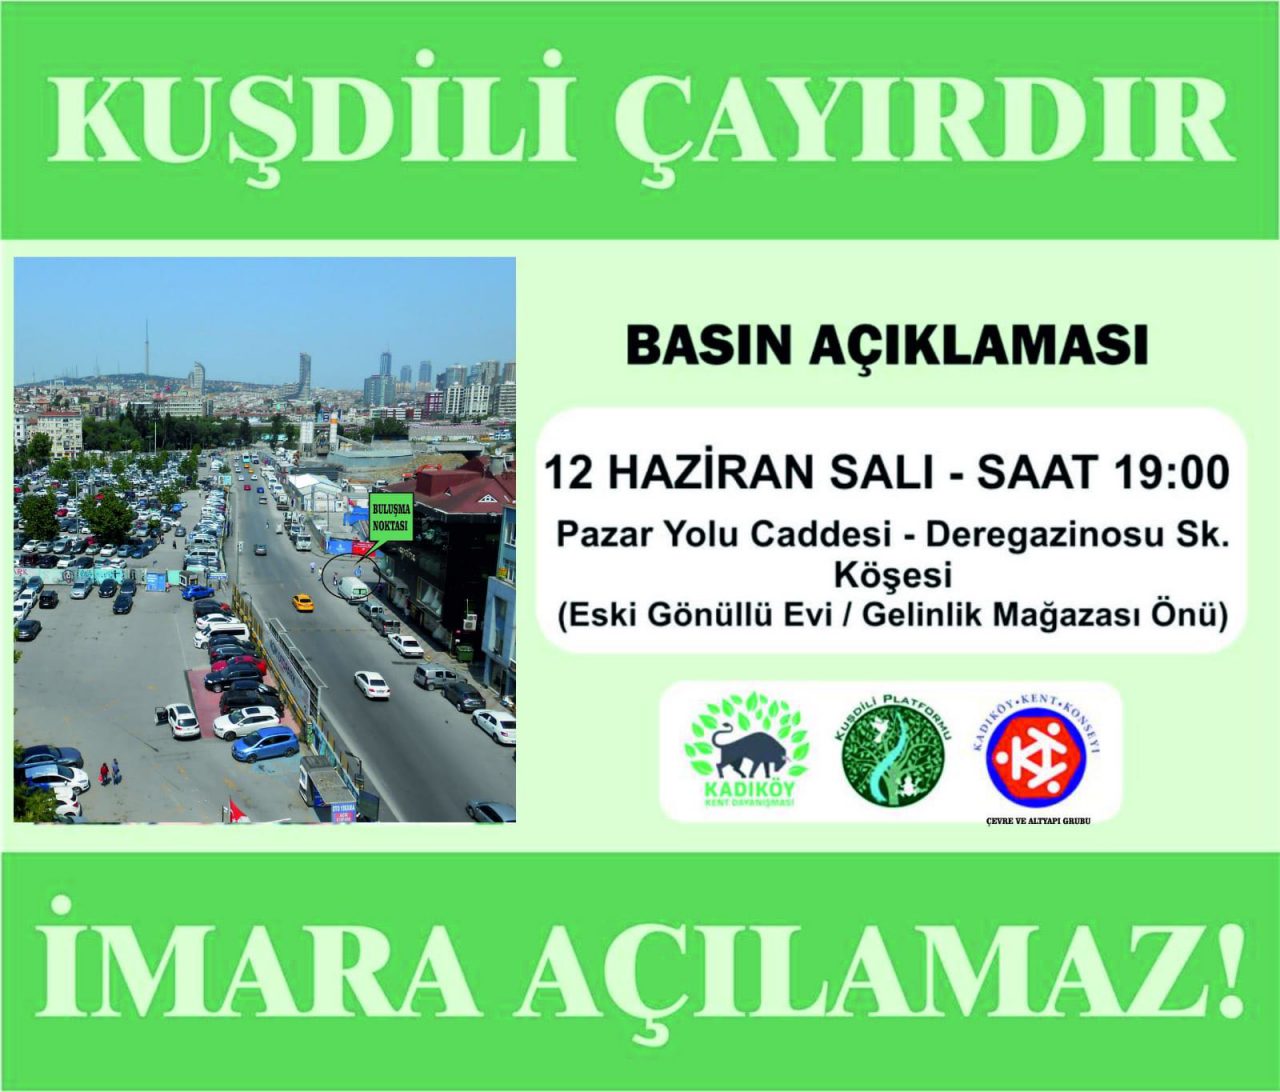 Kadıköy Kent Dayanışması’ndan Basın Açıklamasına Çağrı: Kuşdili Çayırdır, İmara Açılamaz!